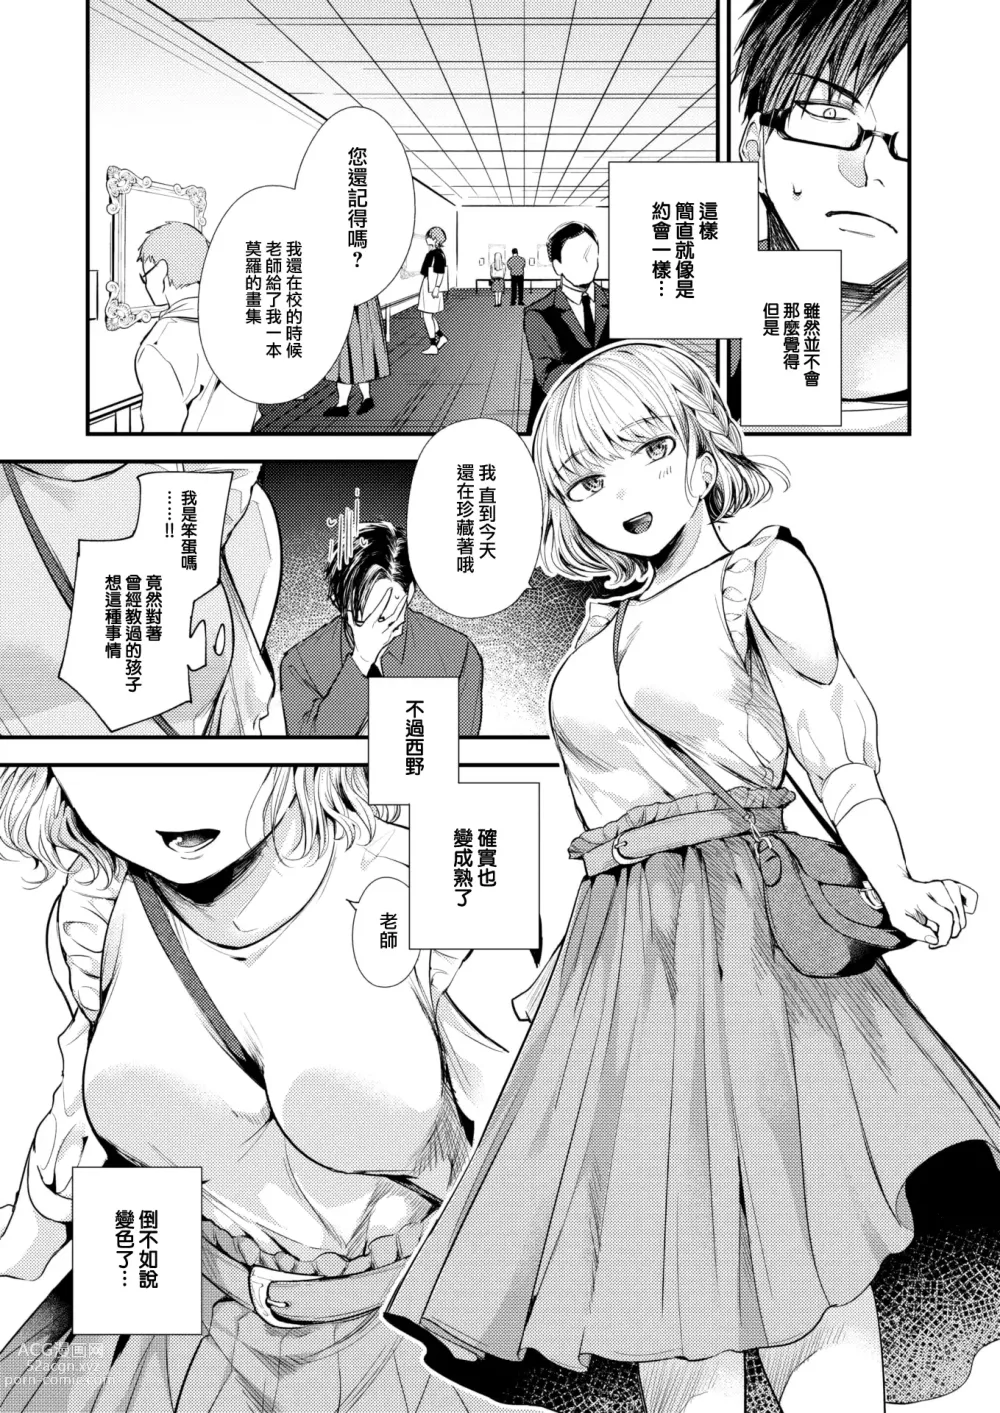 Page 6 of manga Sekishun no Jou